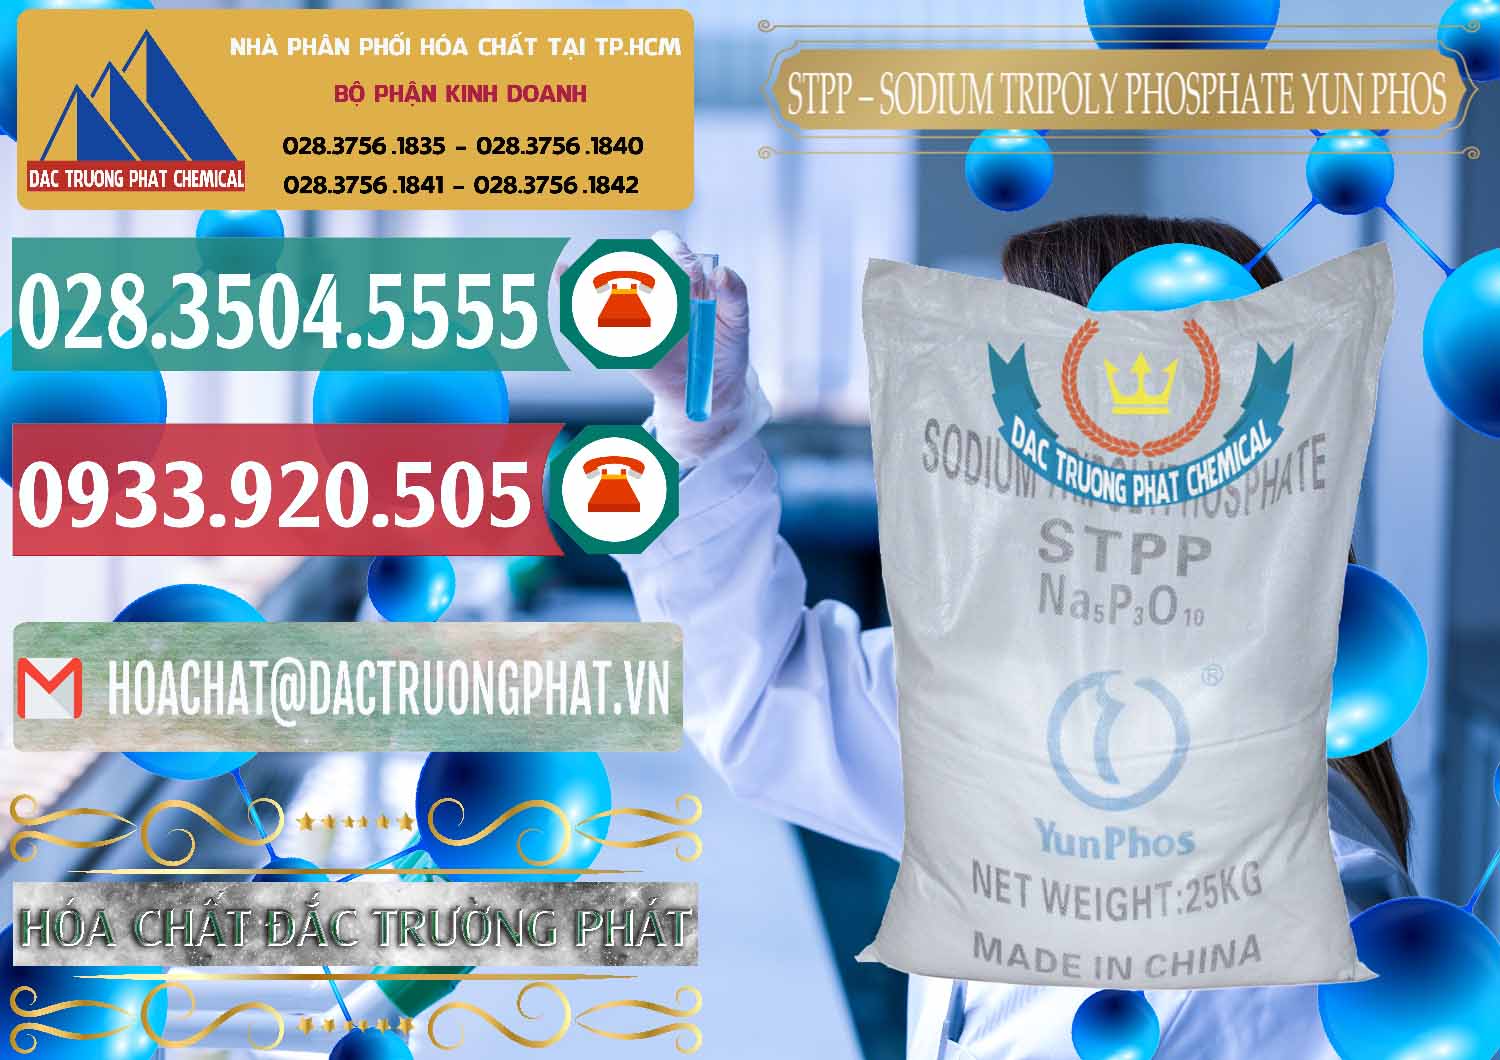 Nơi bán và phân phối Sodium Tripoly Phosphate - STPP Yun Phos Trung Quốc China - 0153 - Cung cấp & phân phối hóa chất tại TP.HCM - muabanhoachat.vn